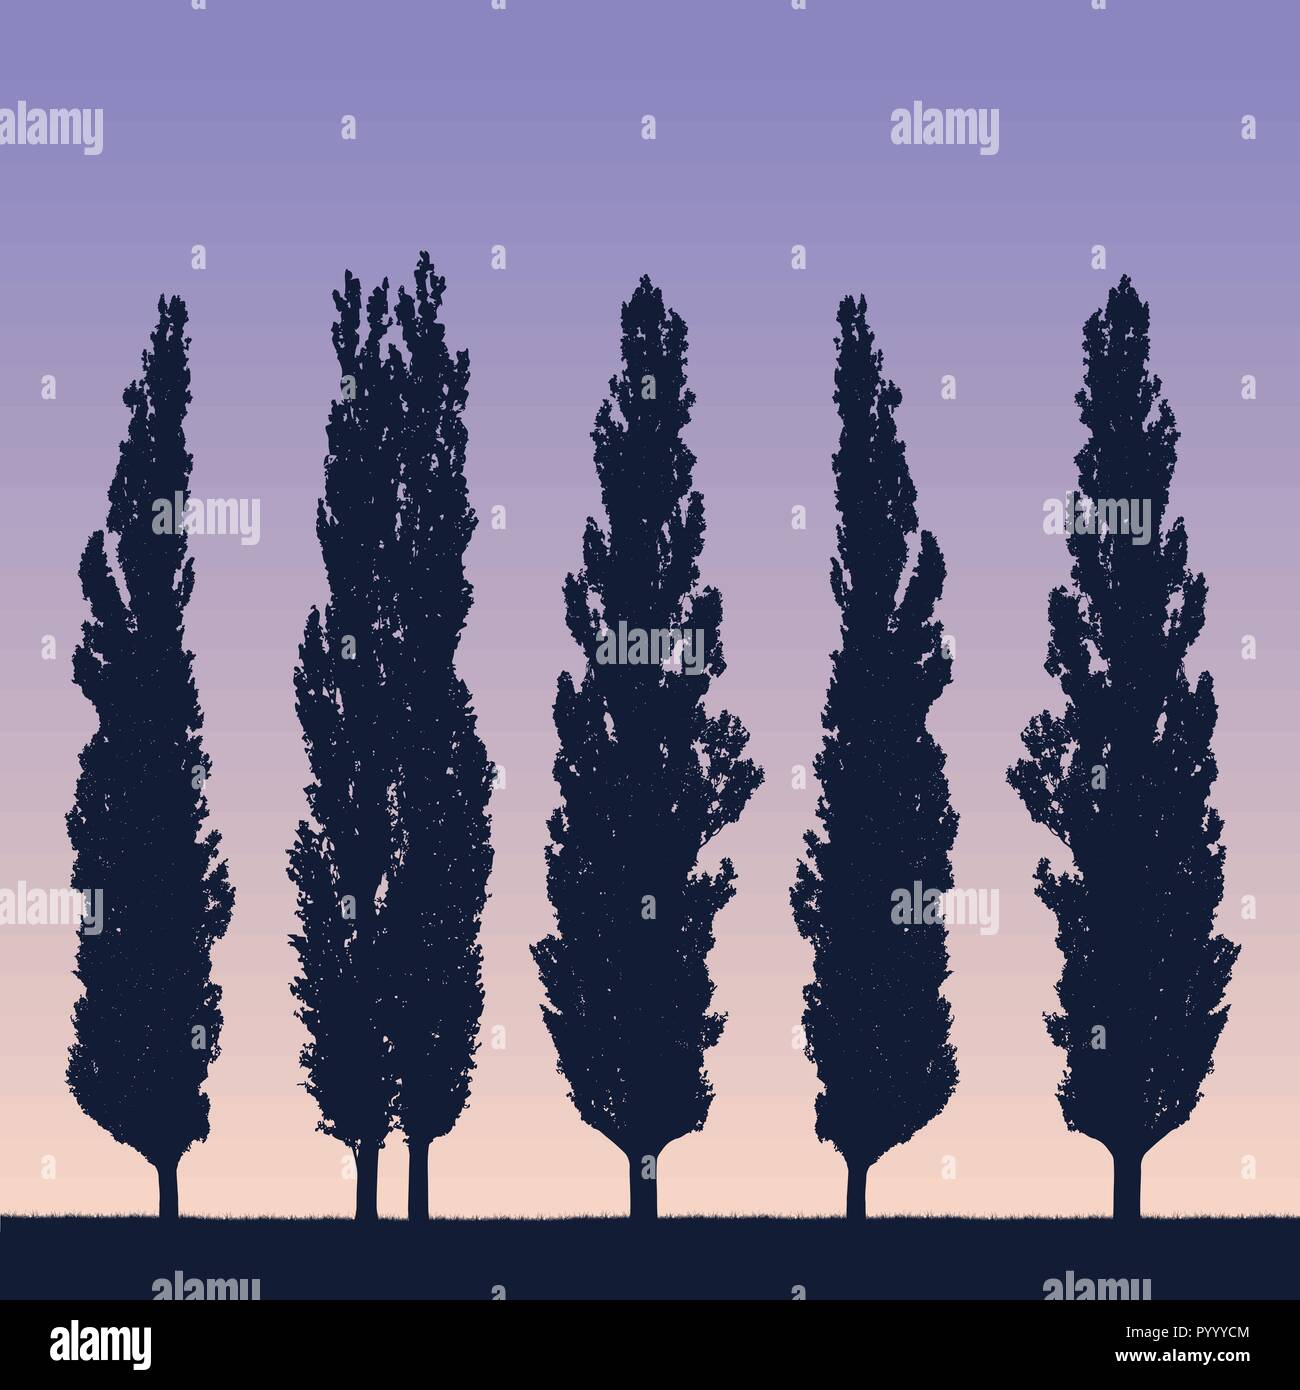 Illustrazione realistica di un paesaggio e la fila di pioppi come un frangivento sulla riva di erba sotto un viola blu cielo con il sollevamento o la regolazione del sole Illustrazione Vettoriale